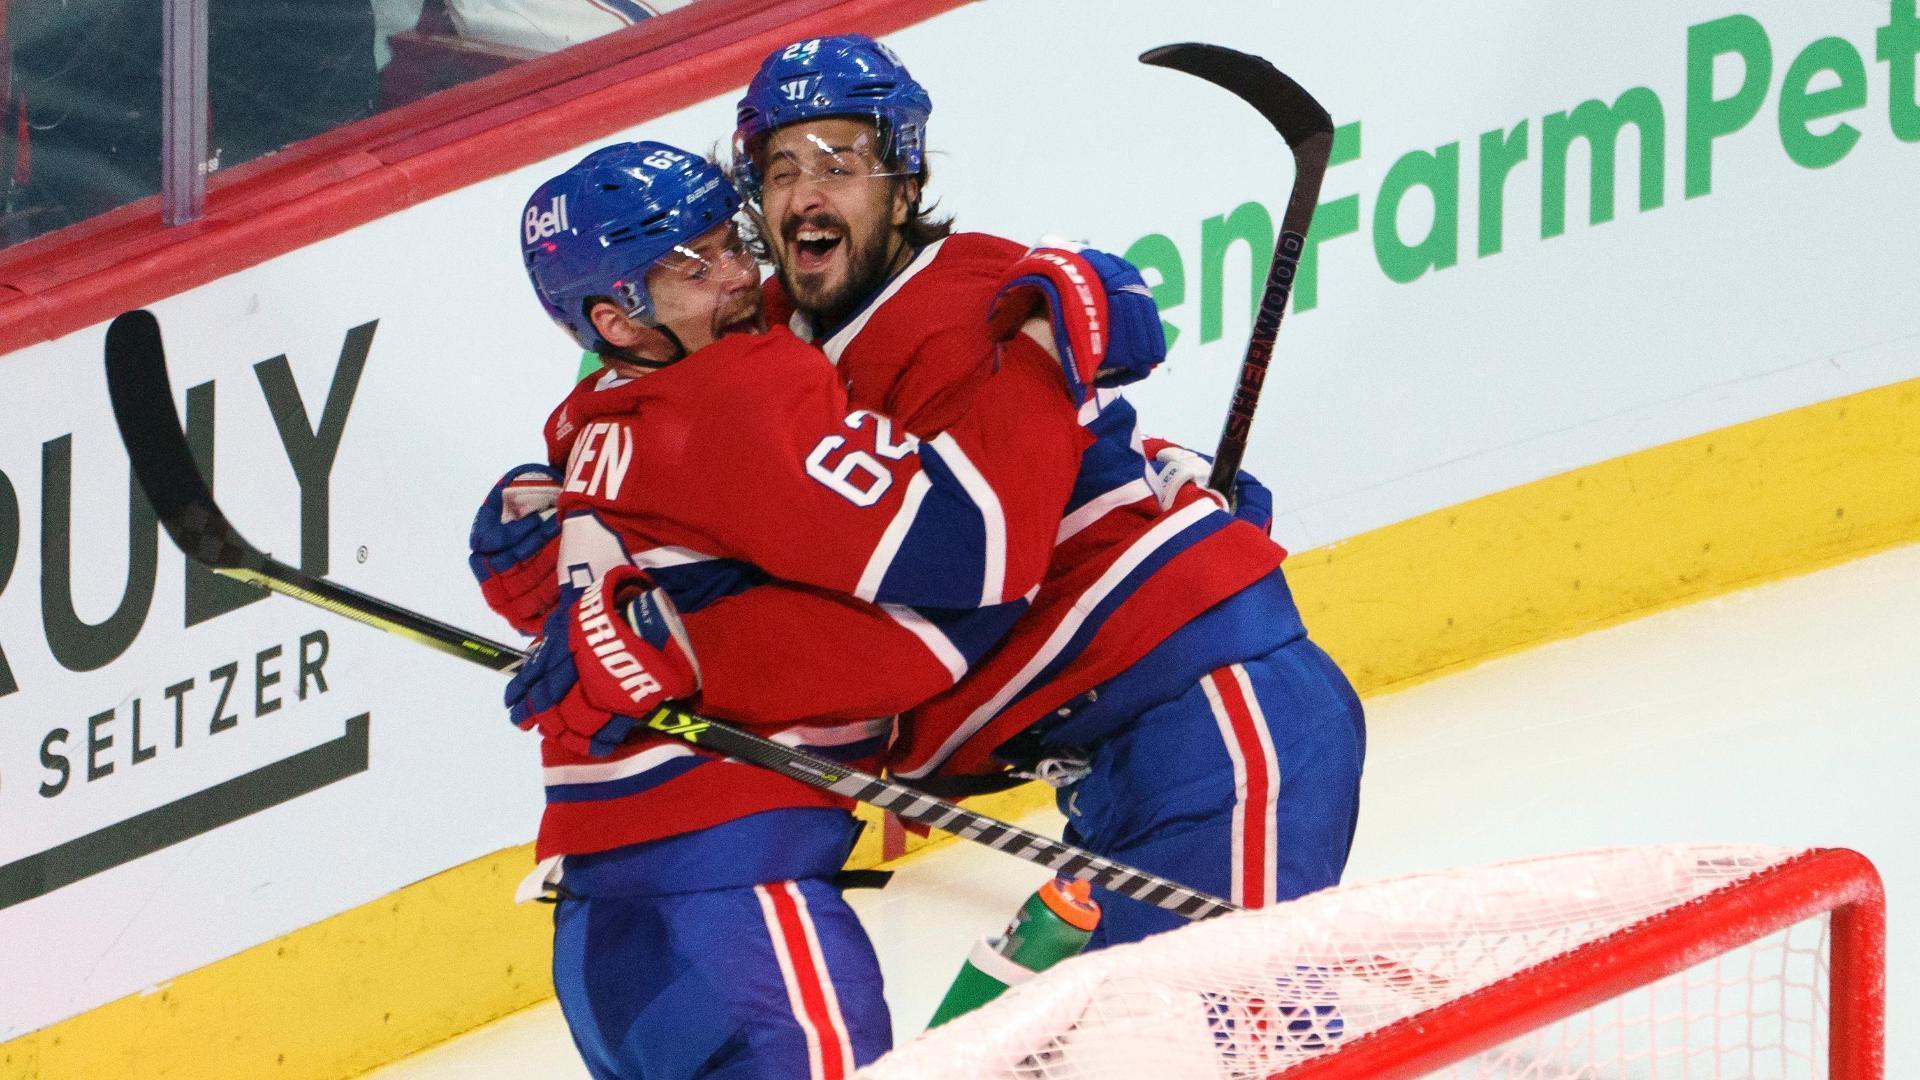 Artturi Lehkonen's OT goal sends Canadiens to Stanley Cup